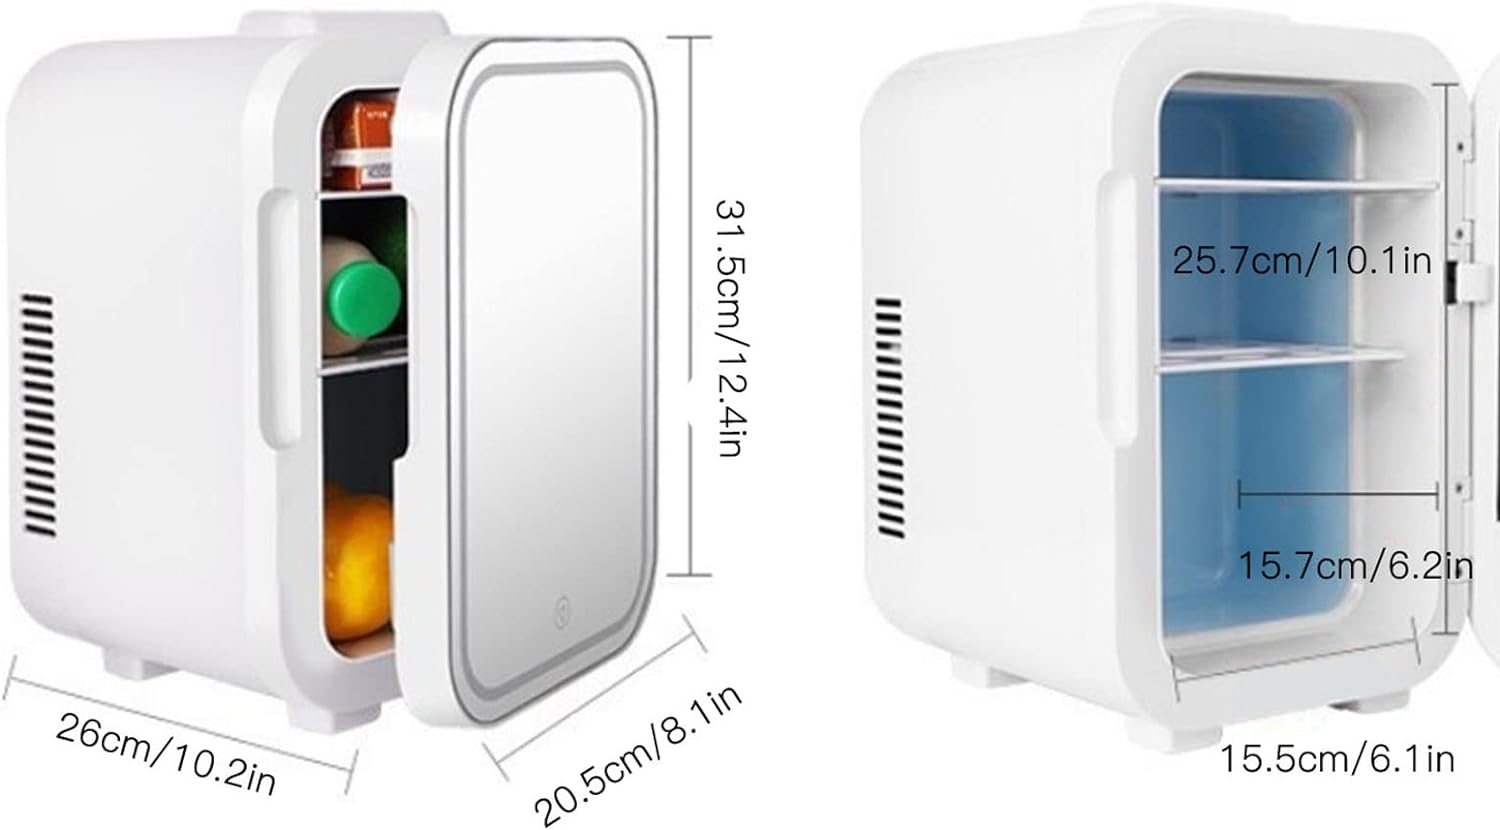 Da esquerda para direita: geladeira para carro branca, com alimentos e bebidas dentro. Geladeira para carro branca vazia